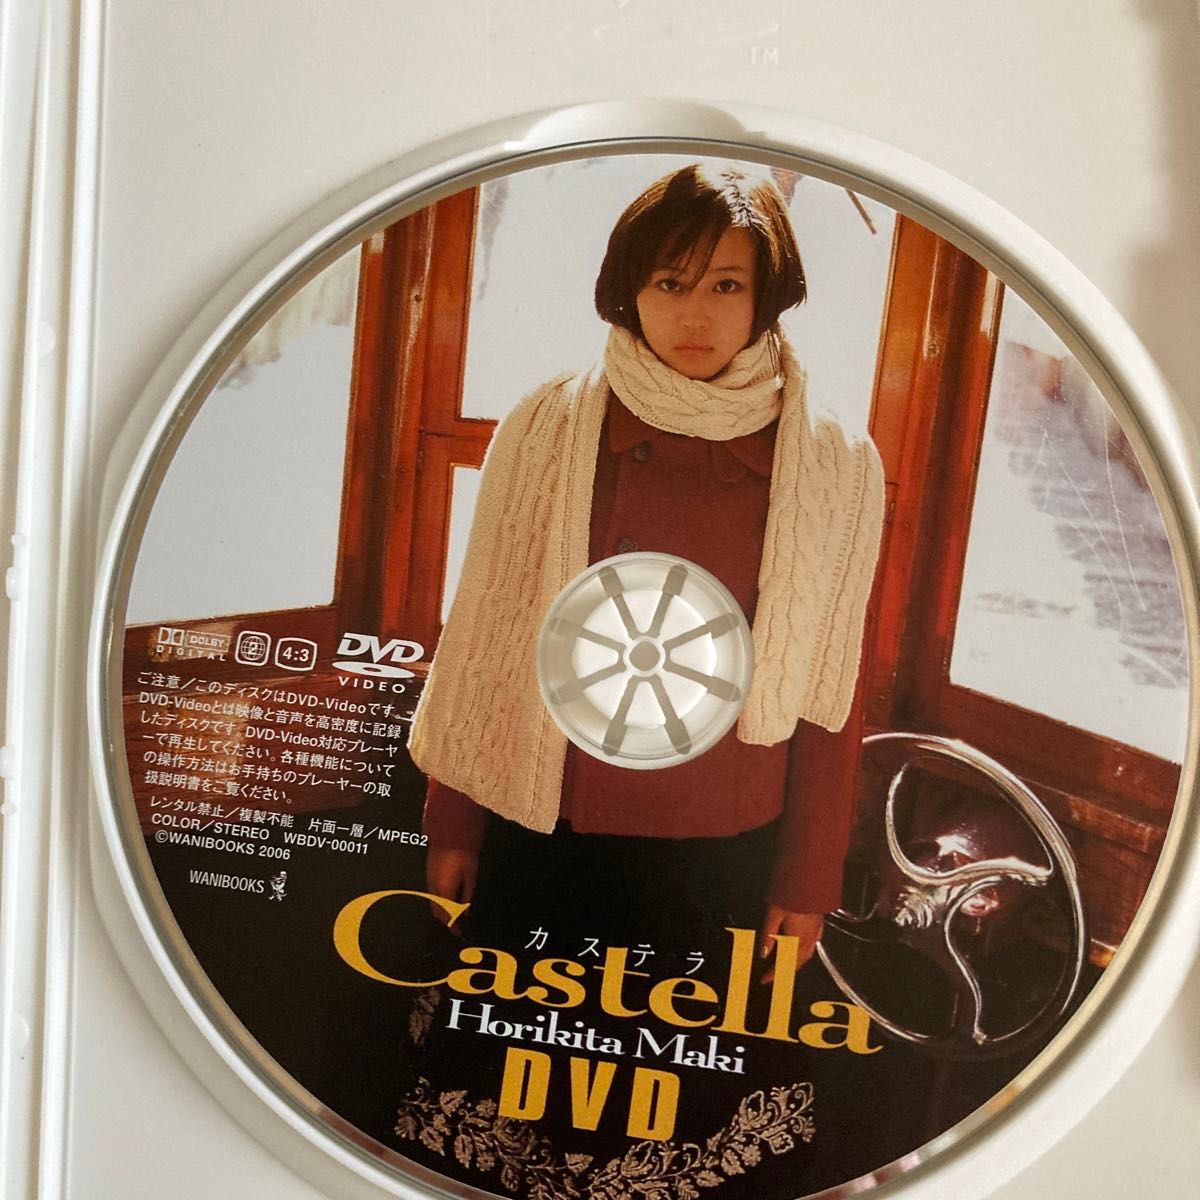 堀北真希 Castella DVD